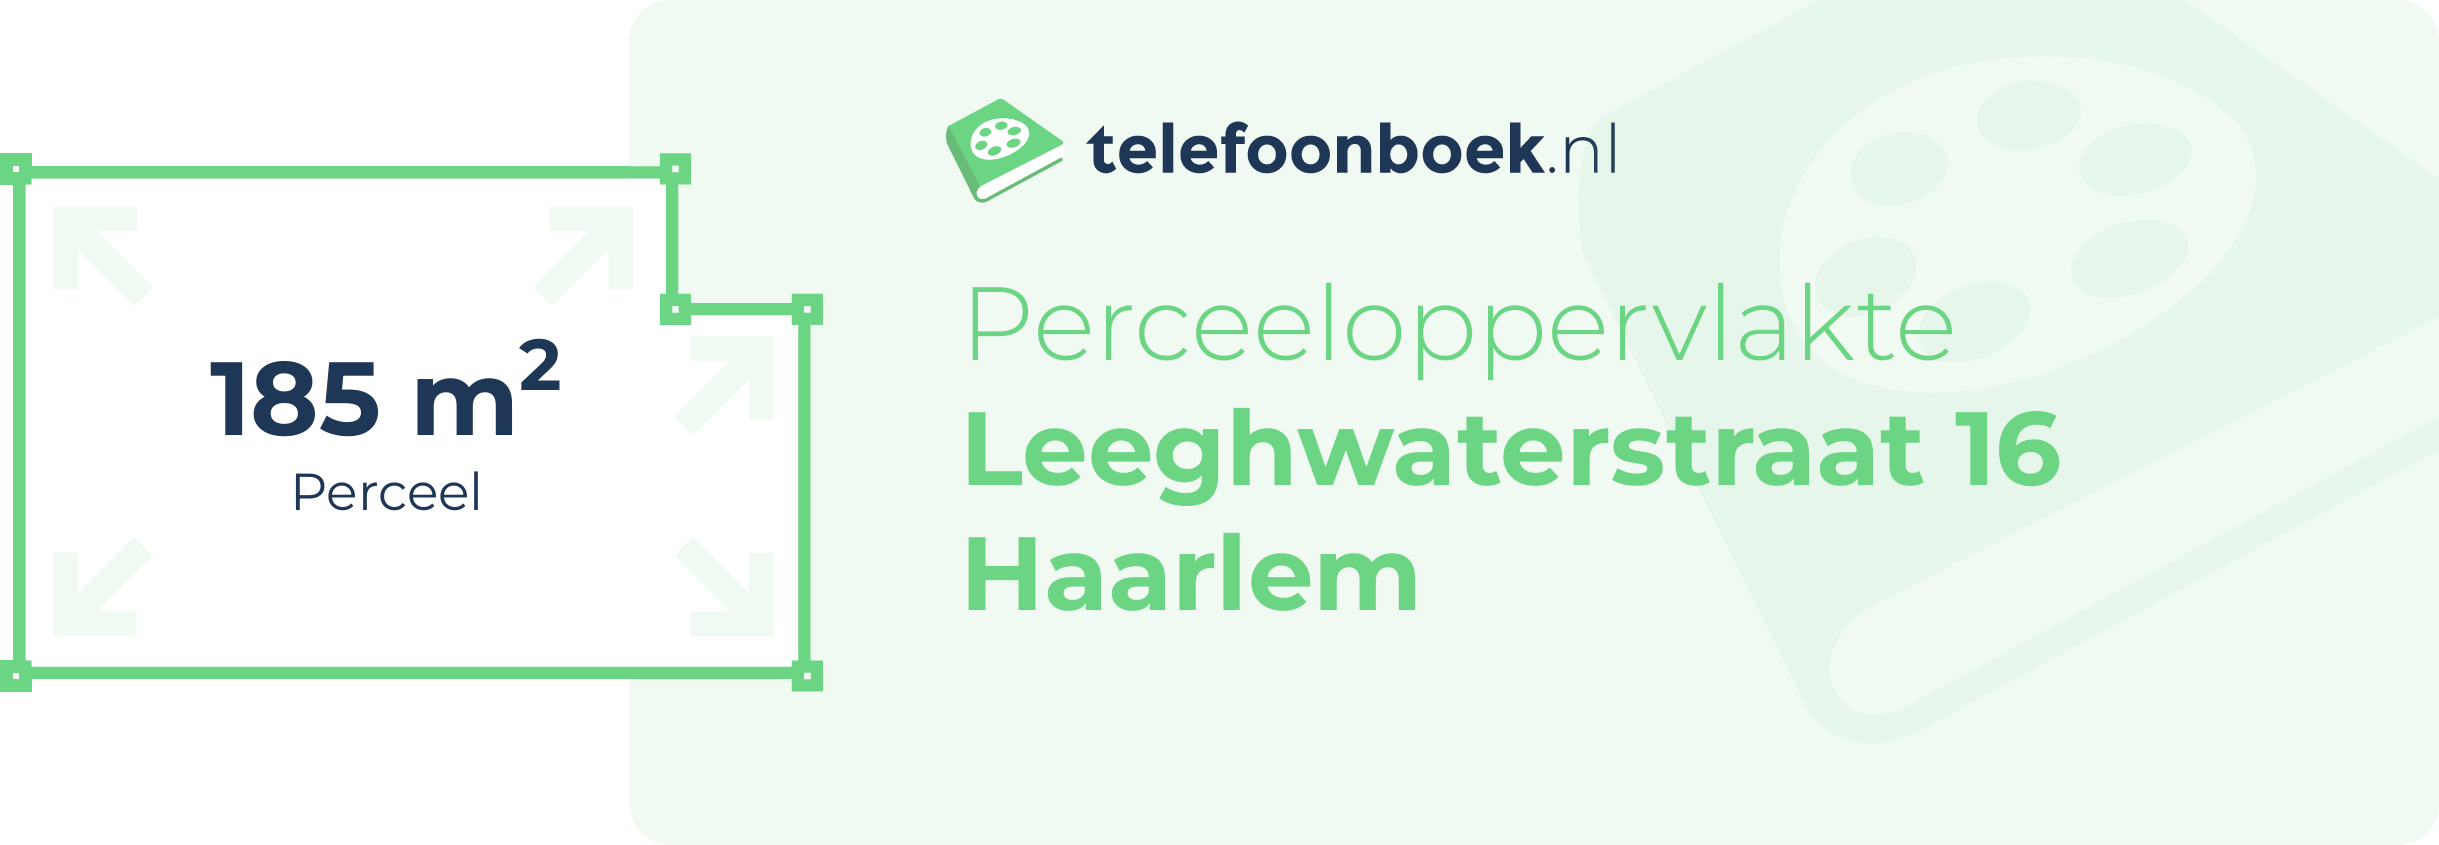 Perceeloppervlakte Leeghwaterstraat 16 Haarlem